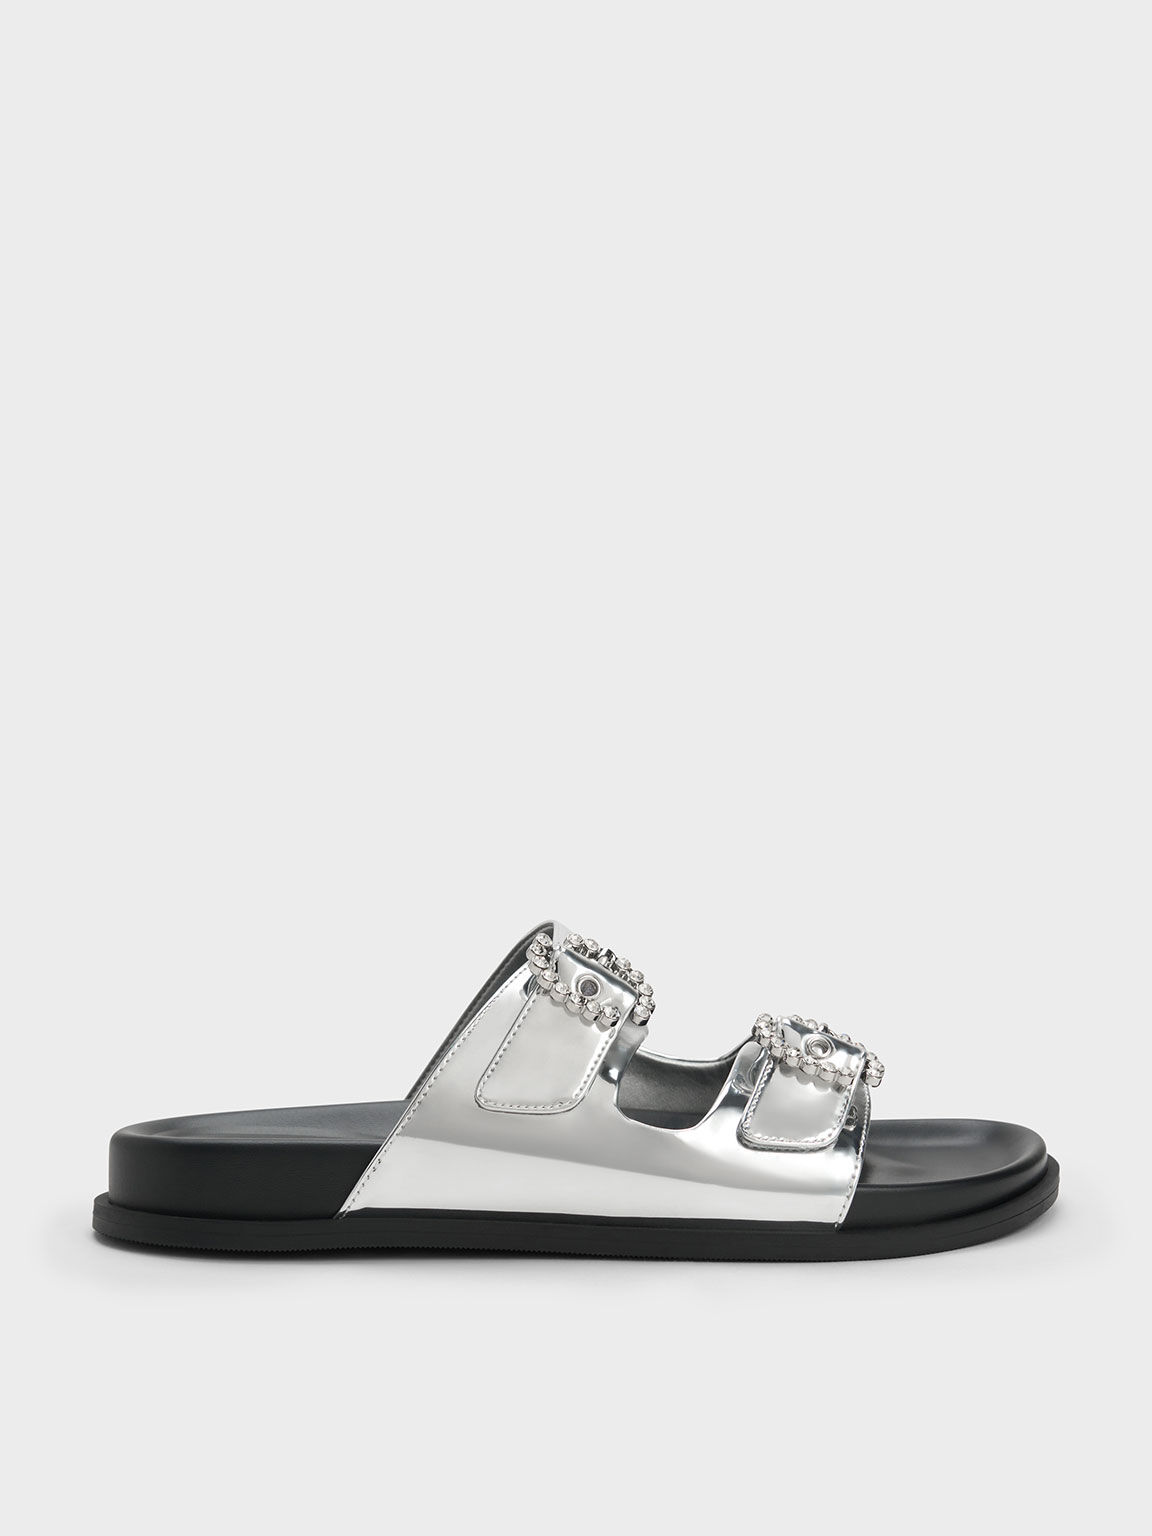 KNICKY Ivory Pearl Slide Sandal | Women's Sandals – Steve Madden